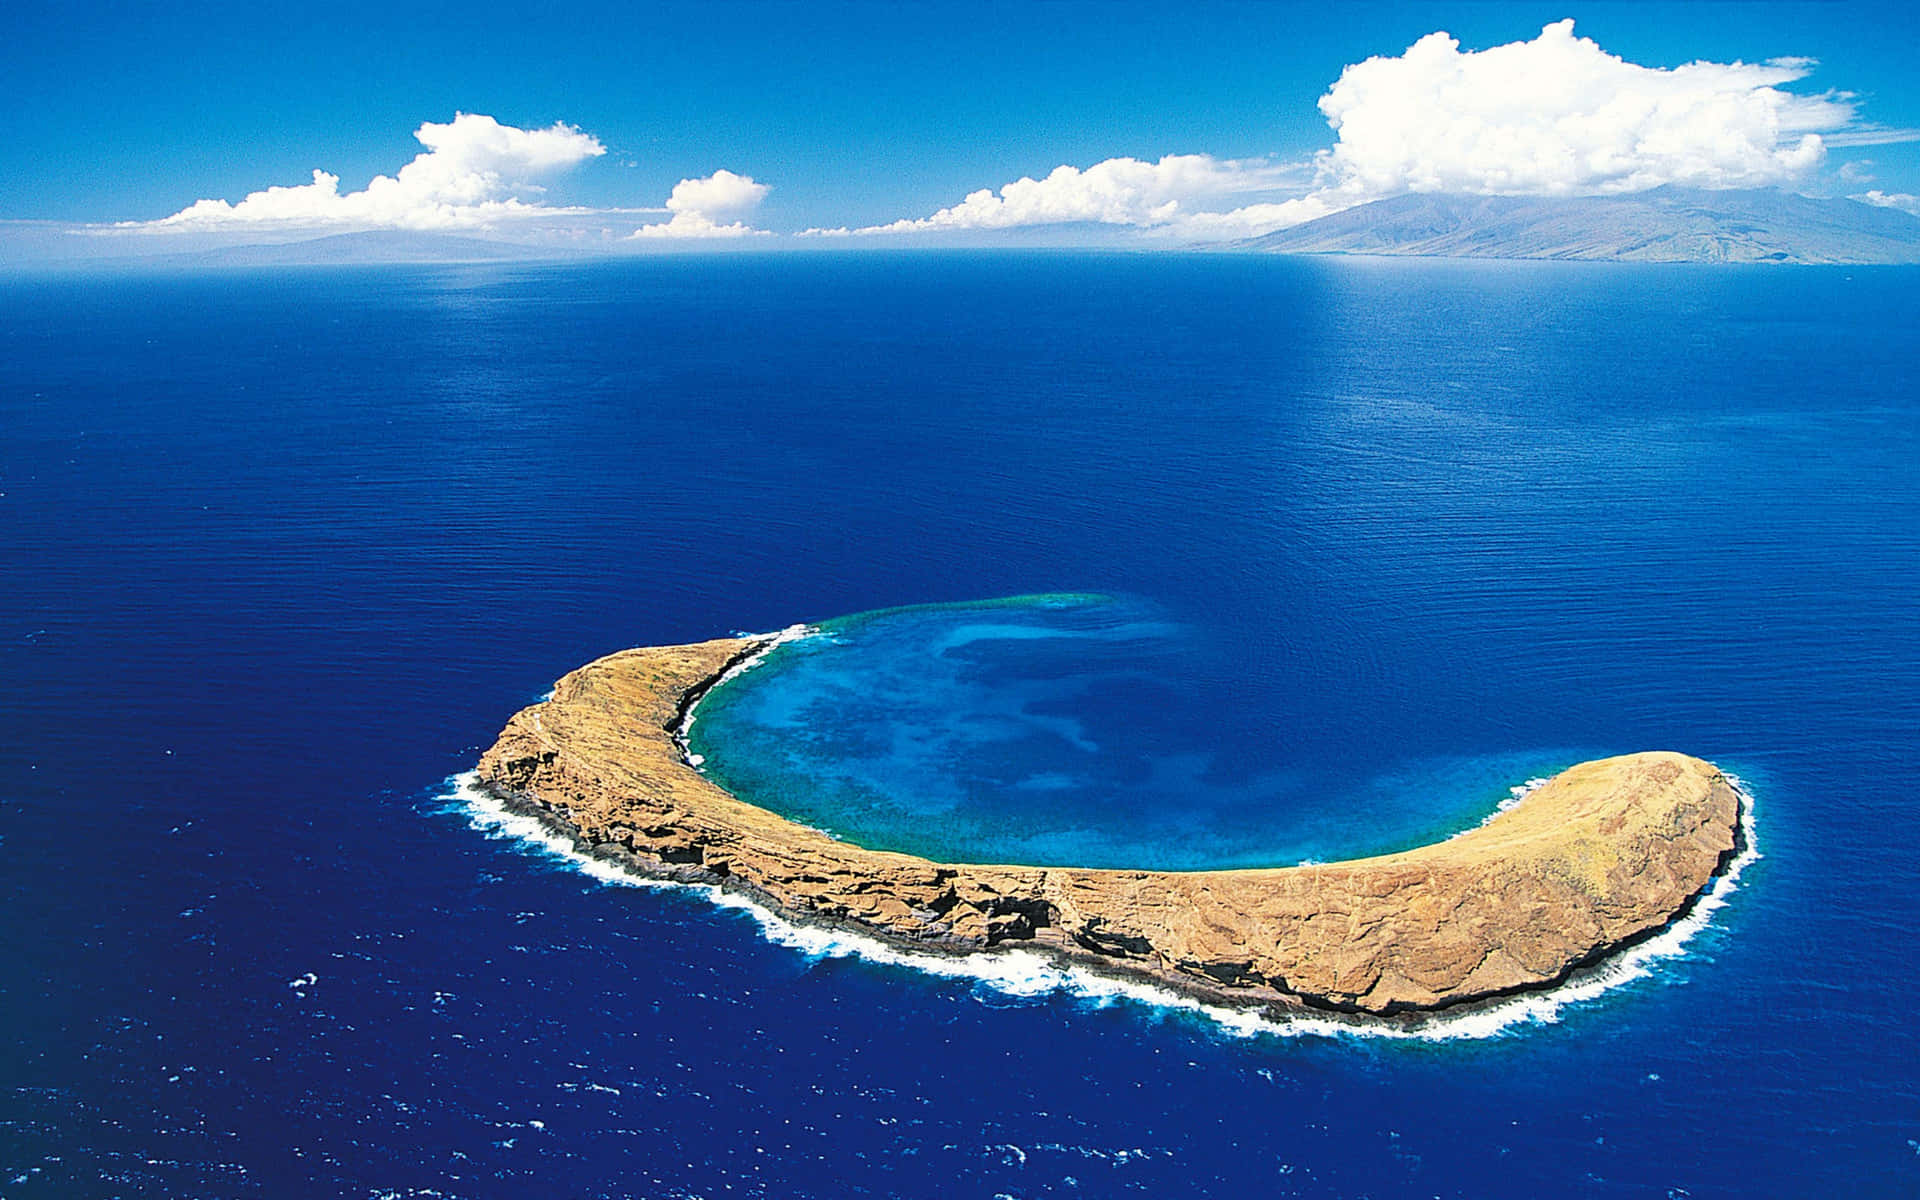 Forbløffendetropisk Ø Med Glitrende Hav.